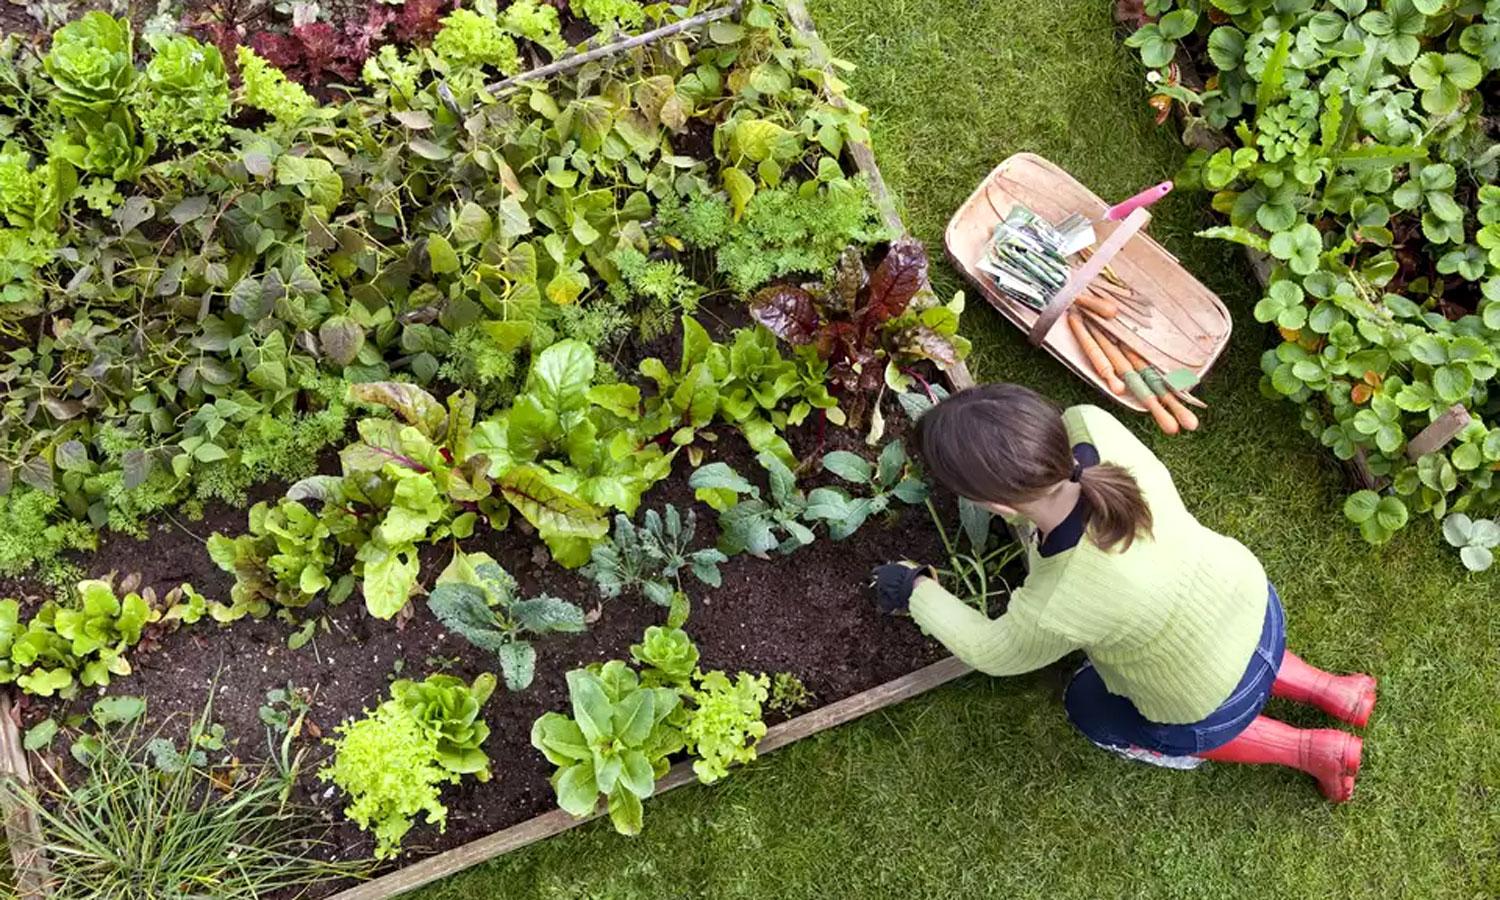 Woman tending vegetable garden.